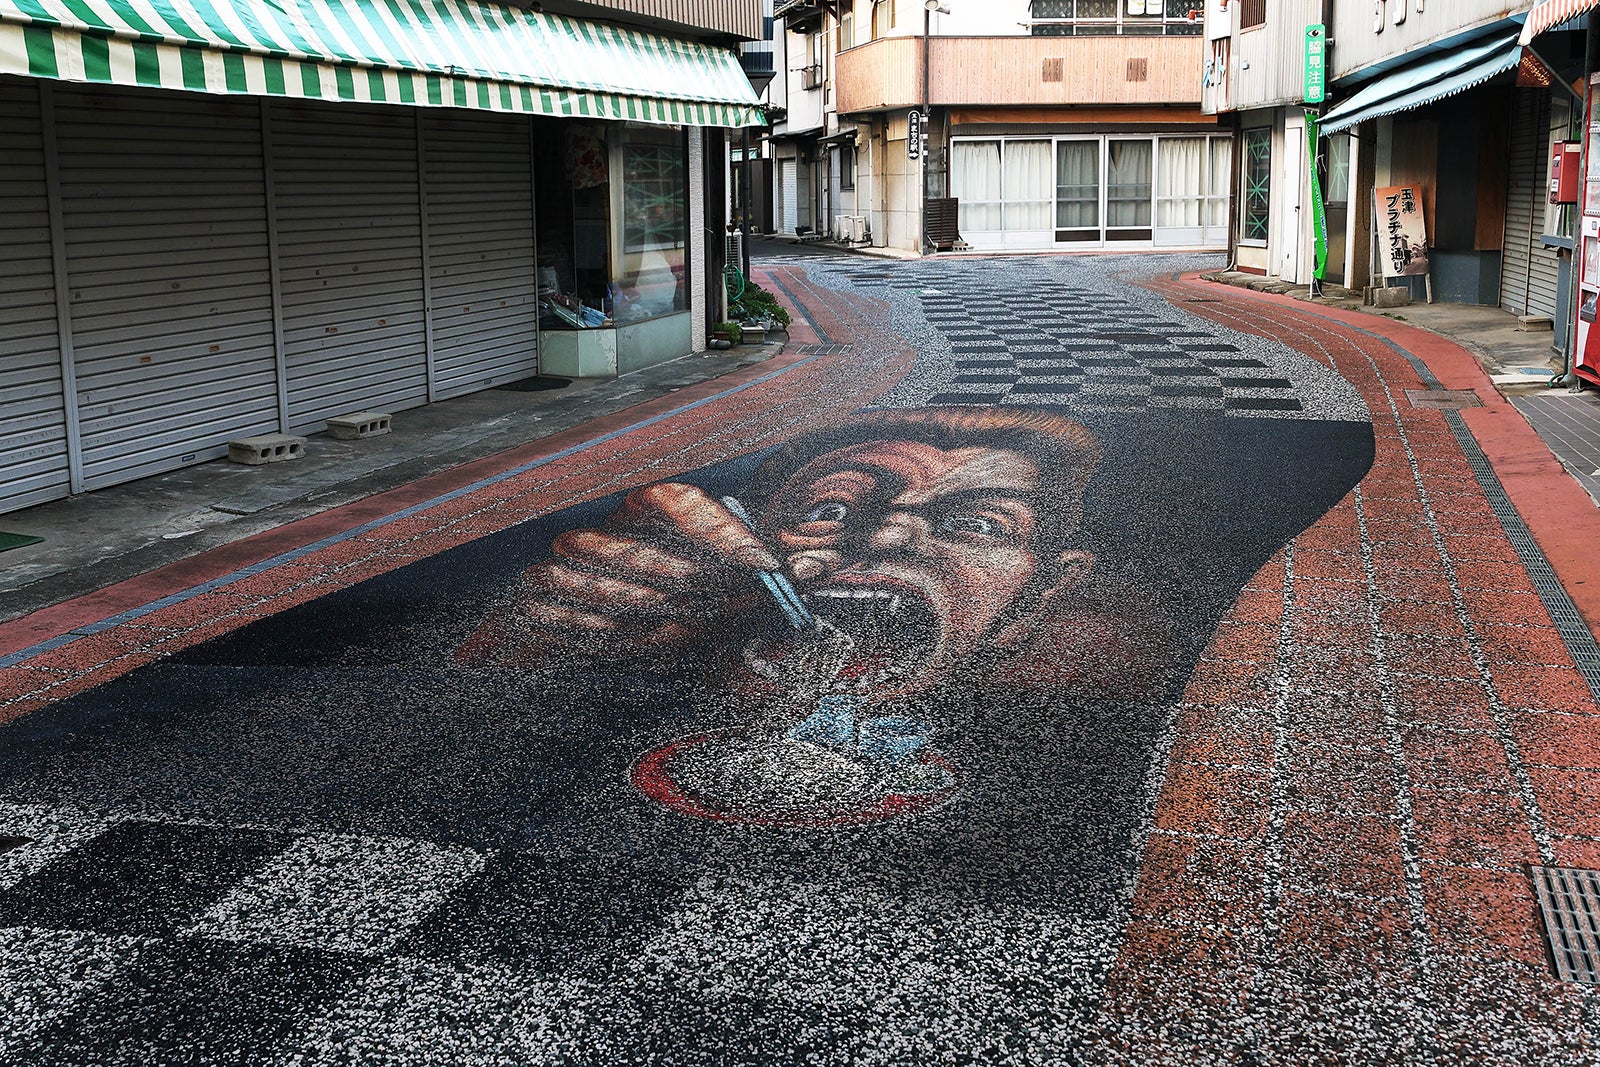  トリックアート「そばを頬張る大男」は名物豊後高田そばをアピールしたもの。同じ商店街には他に2点描かれています。